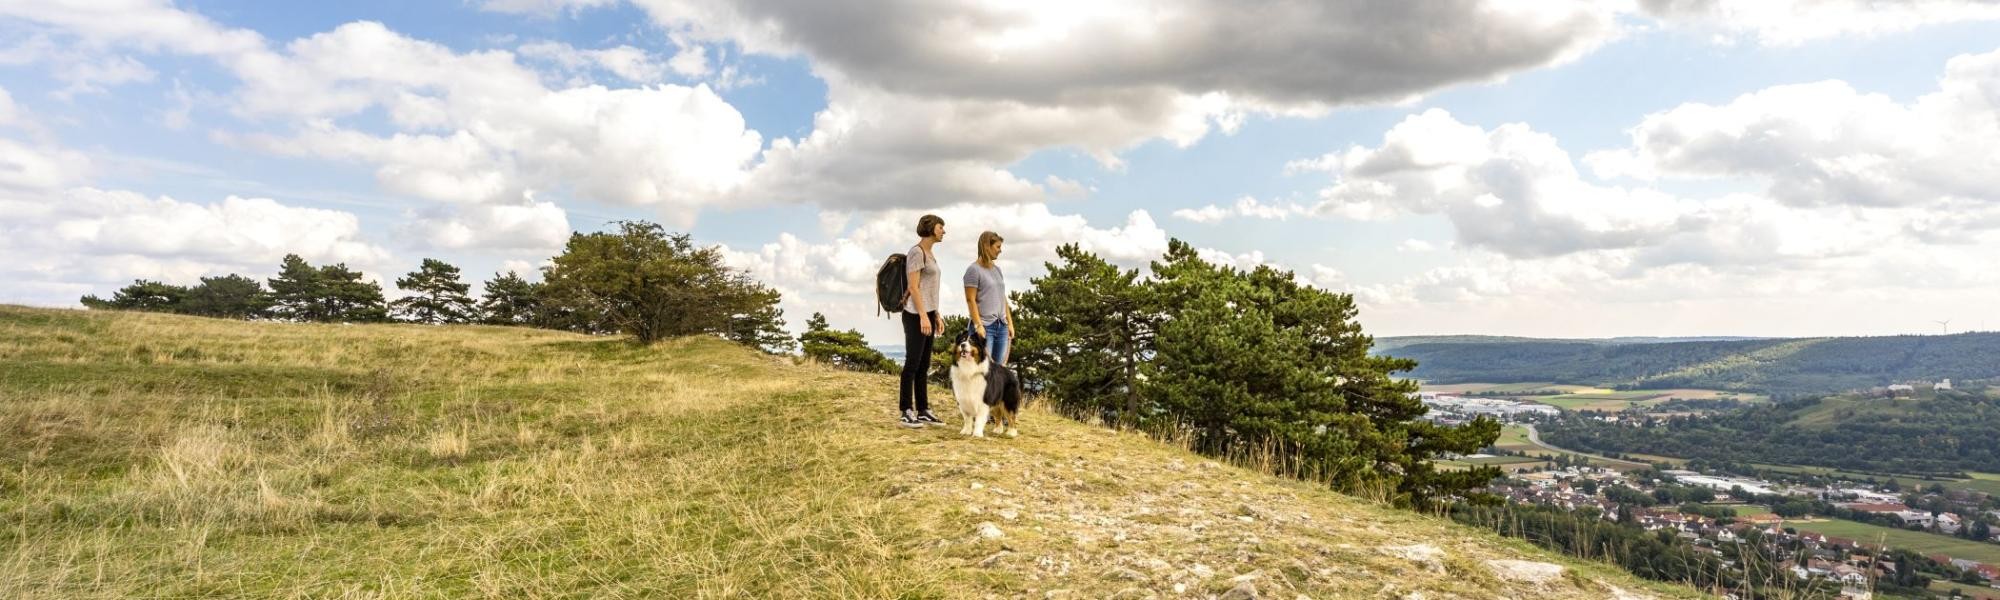 Zwei Frauen blicken vom Gipfelplateau des Ipf auf die Stadt Bopfingen